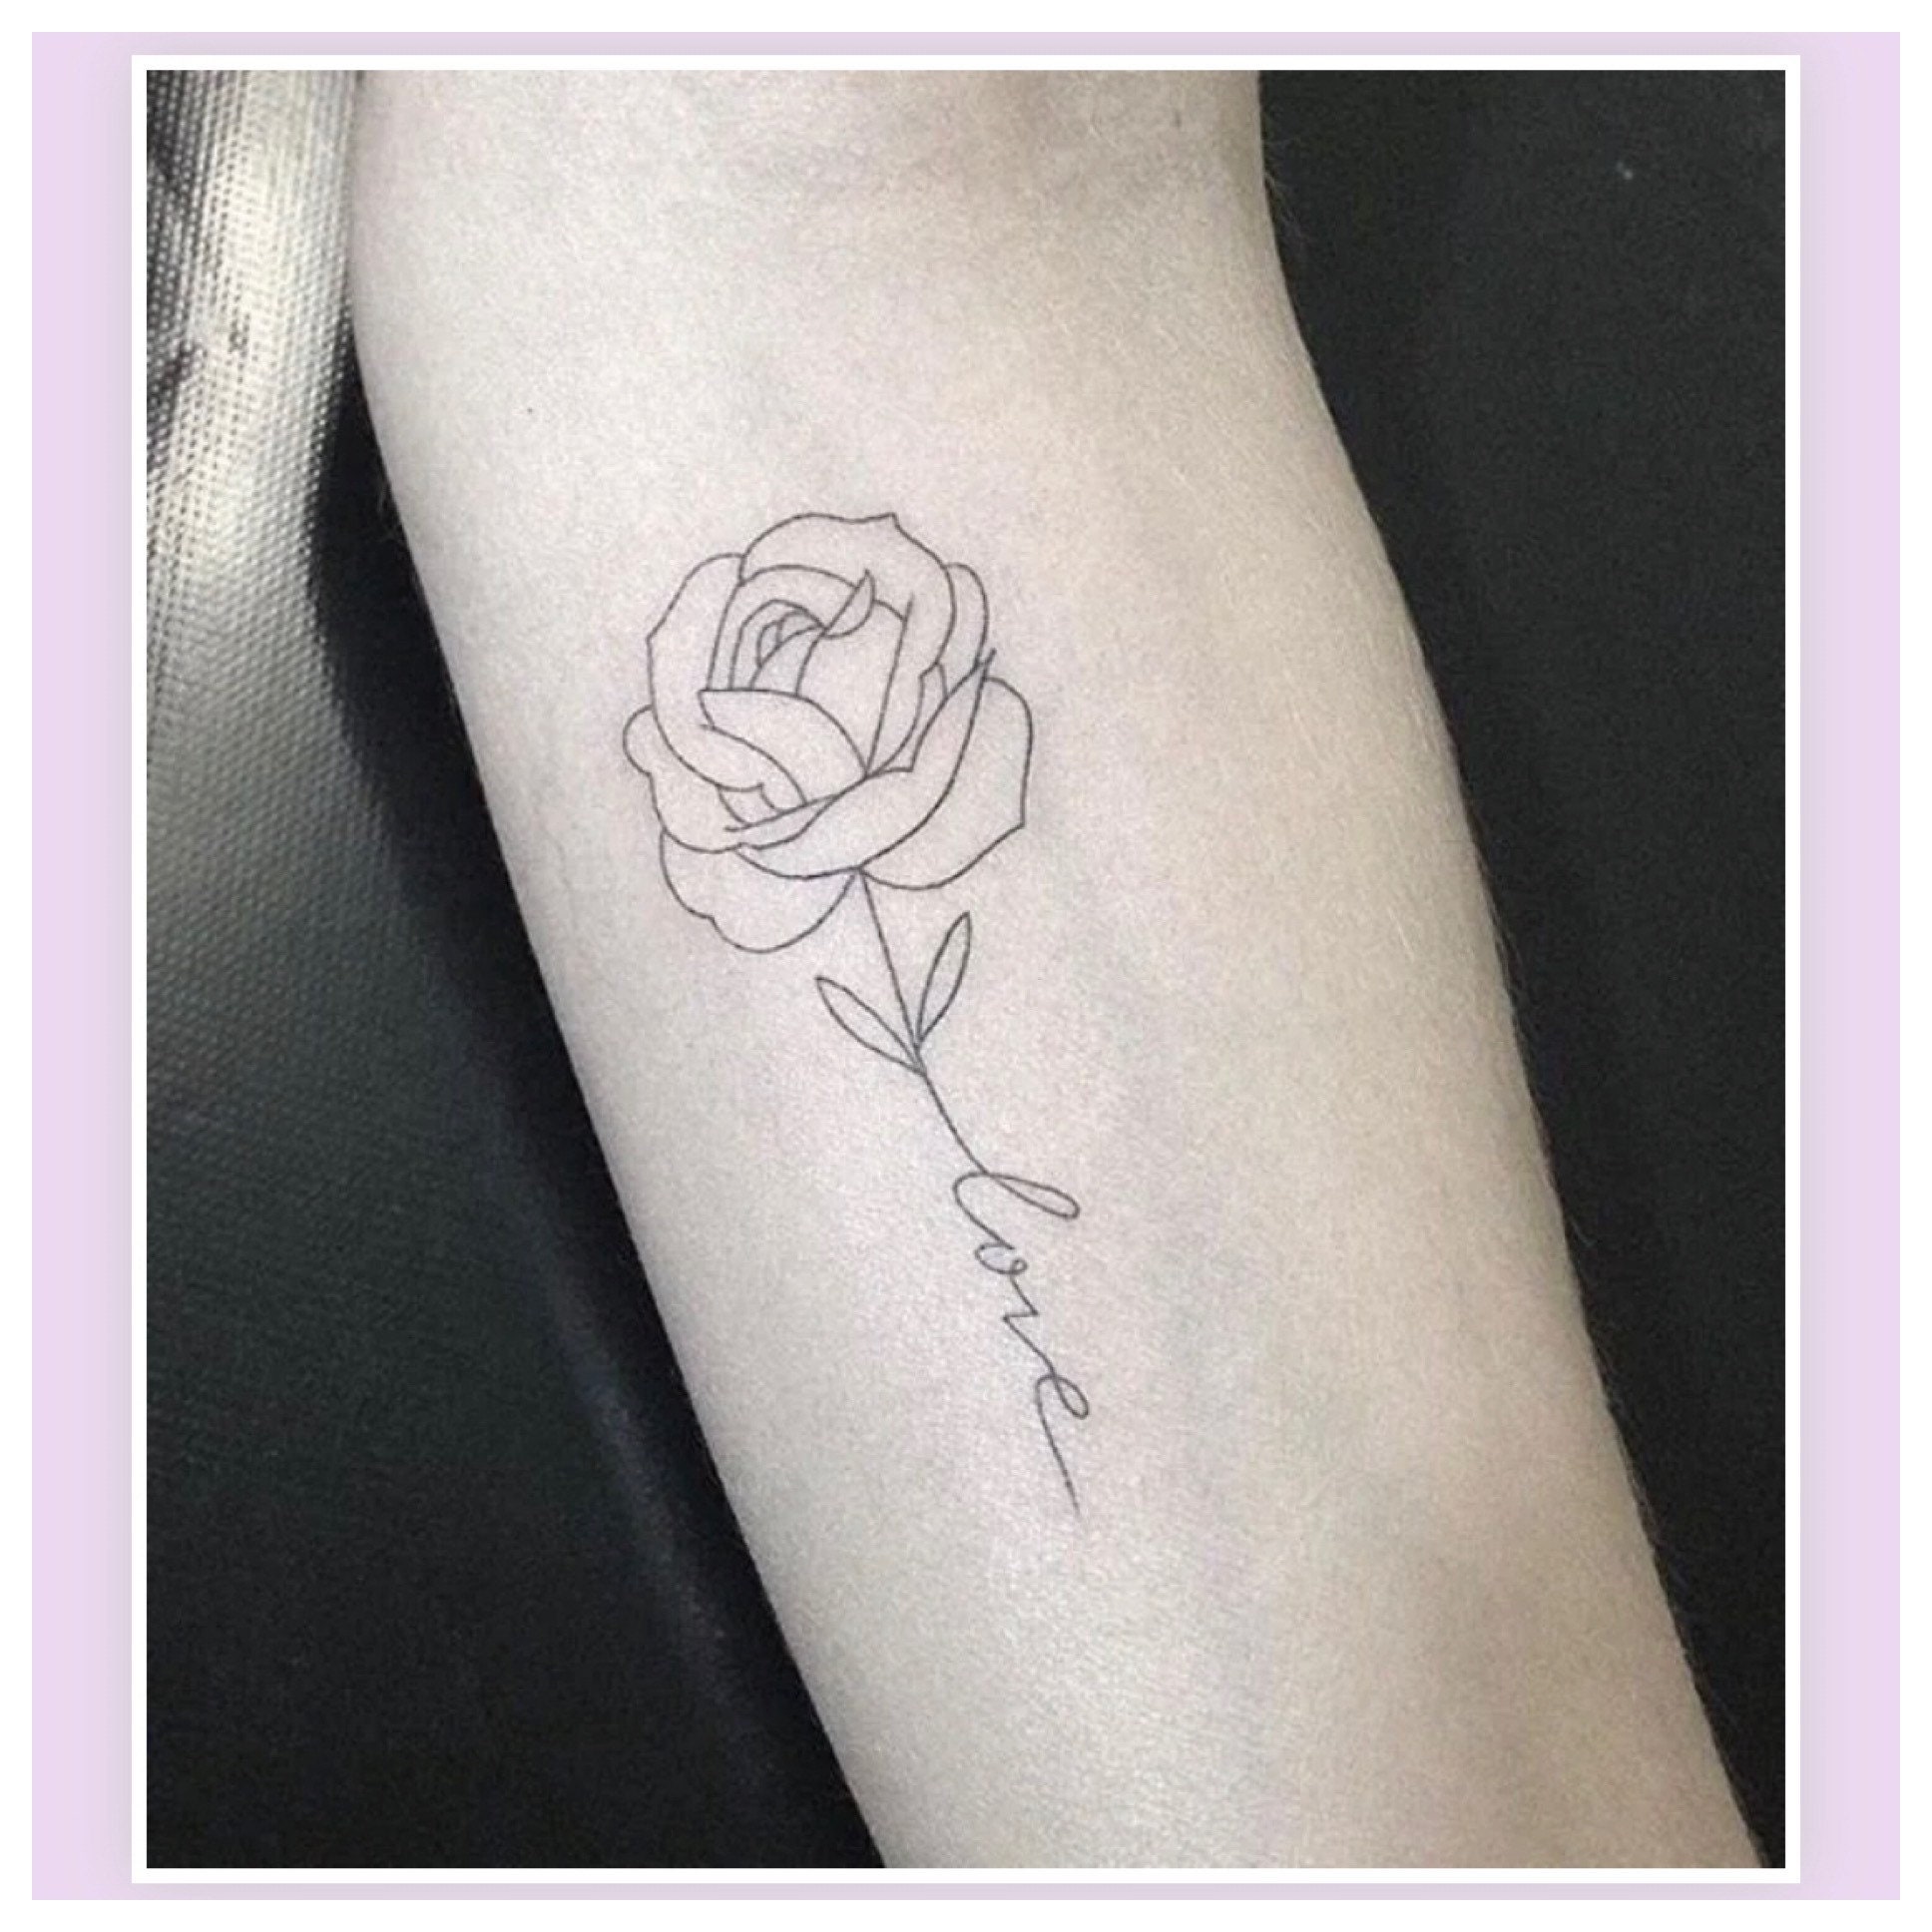 21 Tattoo Studio - Simple Rose Line n Shades Only. #rosetattoo  #simpletattoo #simplerosetattoo #lineart #tattooformen #tattooforgirls  #tattoosforwomen #21tattoostudio #jasongeorge21 #minimalrosetattoo |  Facebook